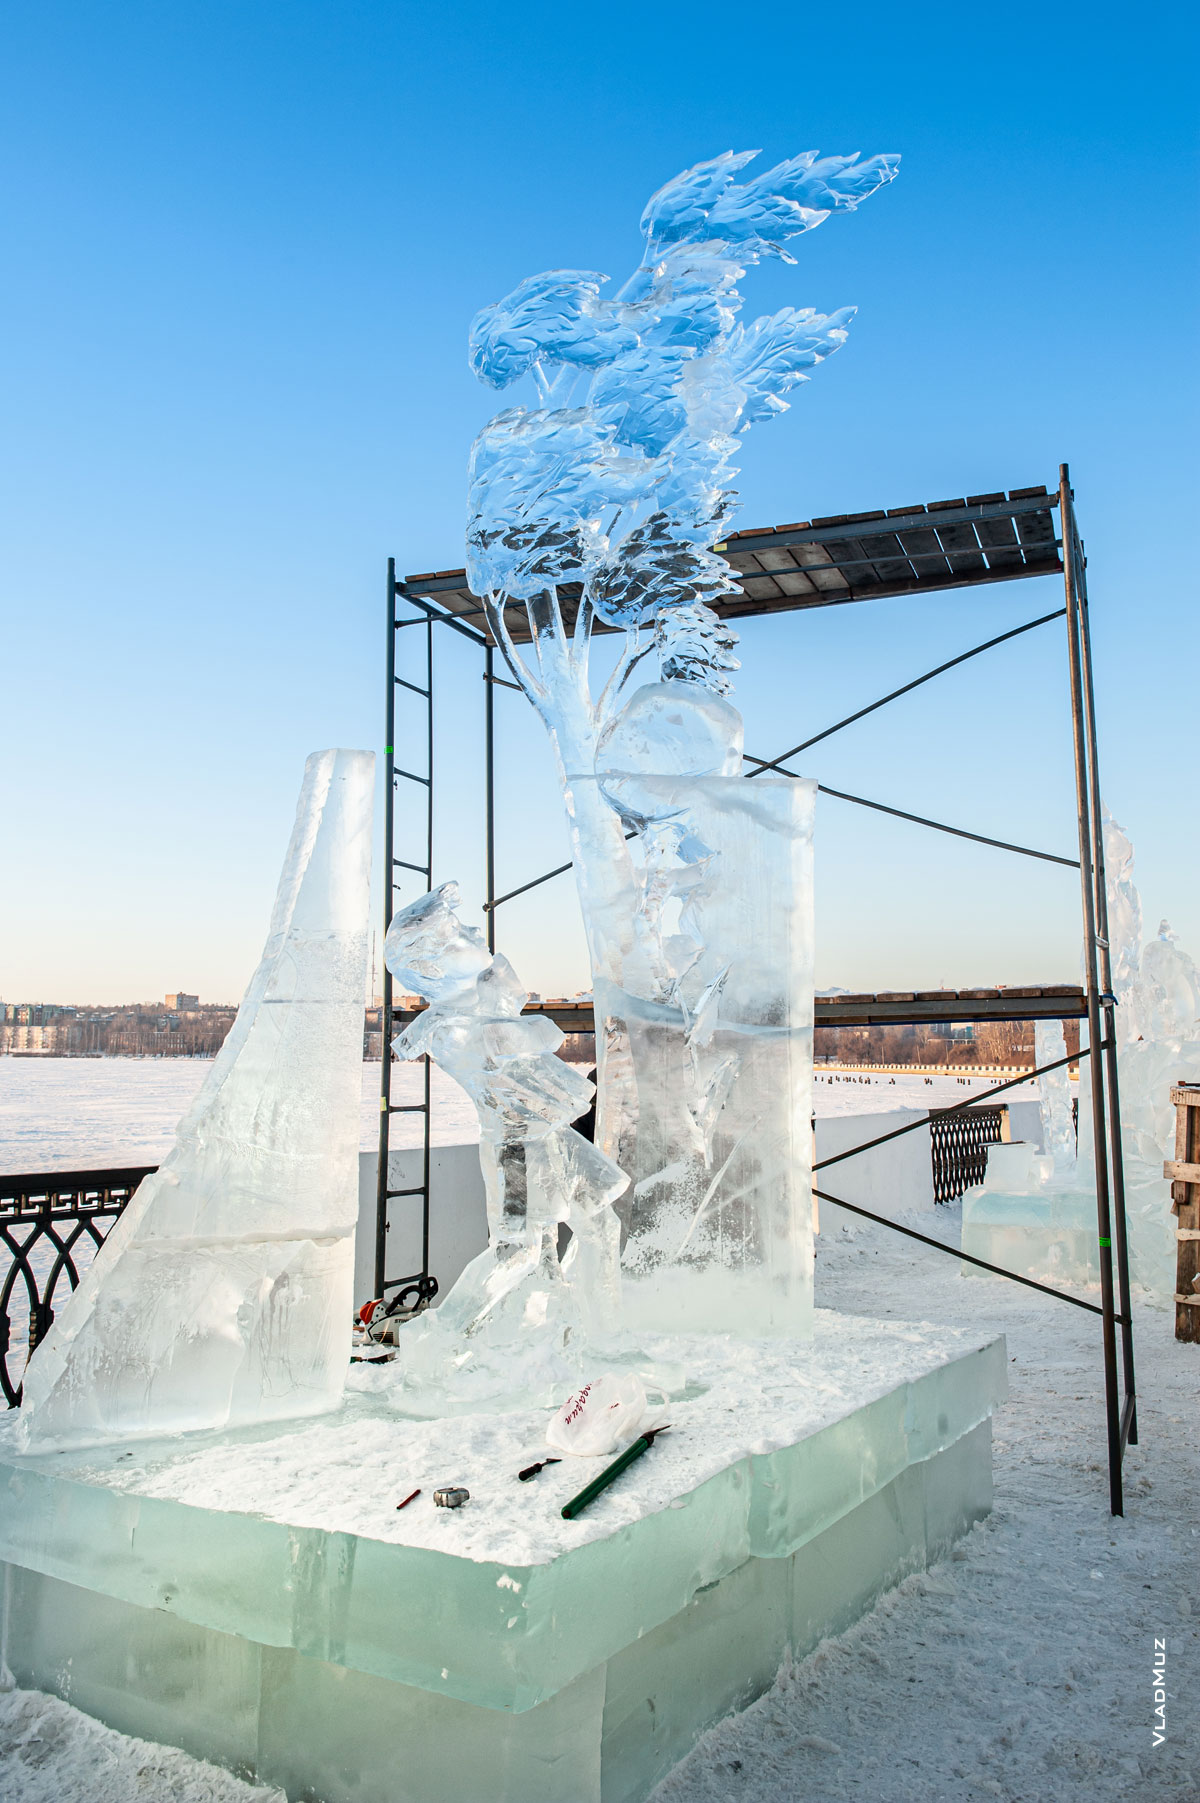 Ижевск, фестиваль «Удмуртский лед»: фото процесса создания ледовой скульптуры «Каникулы»